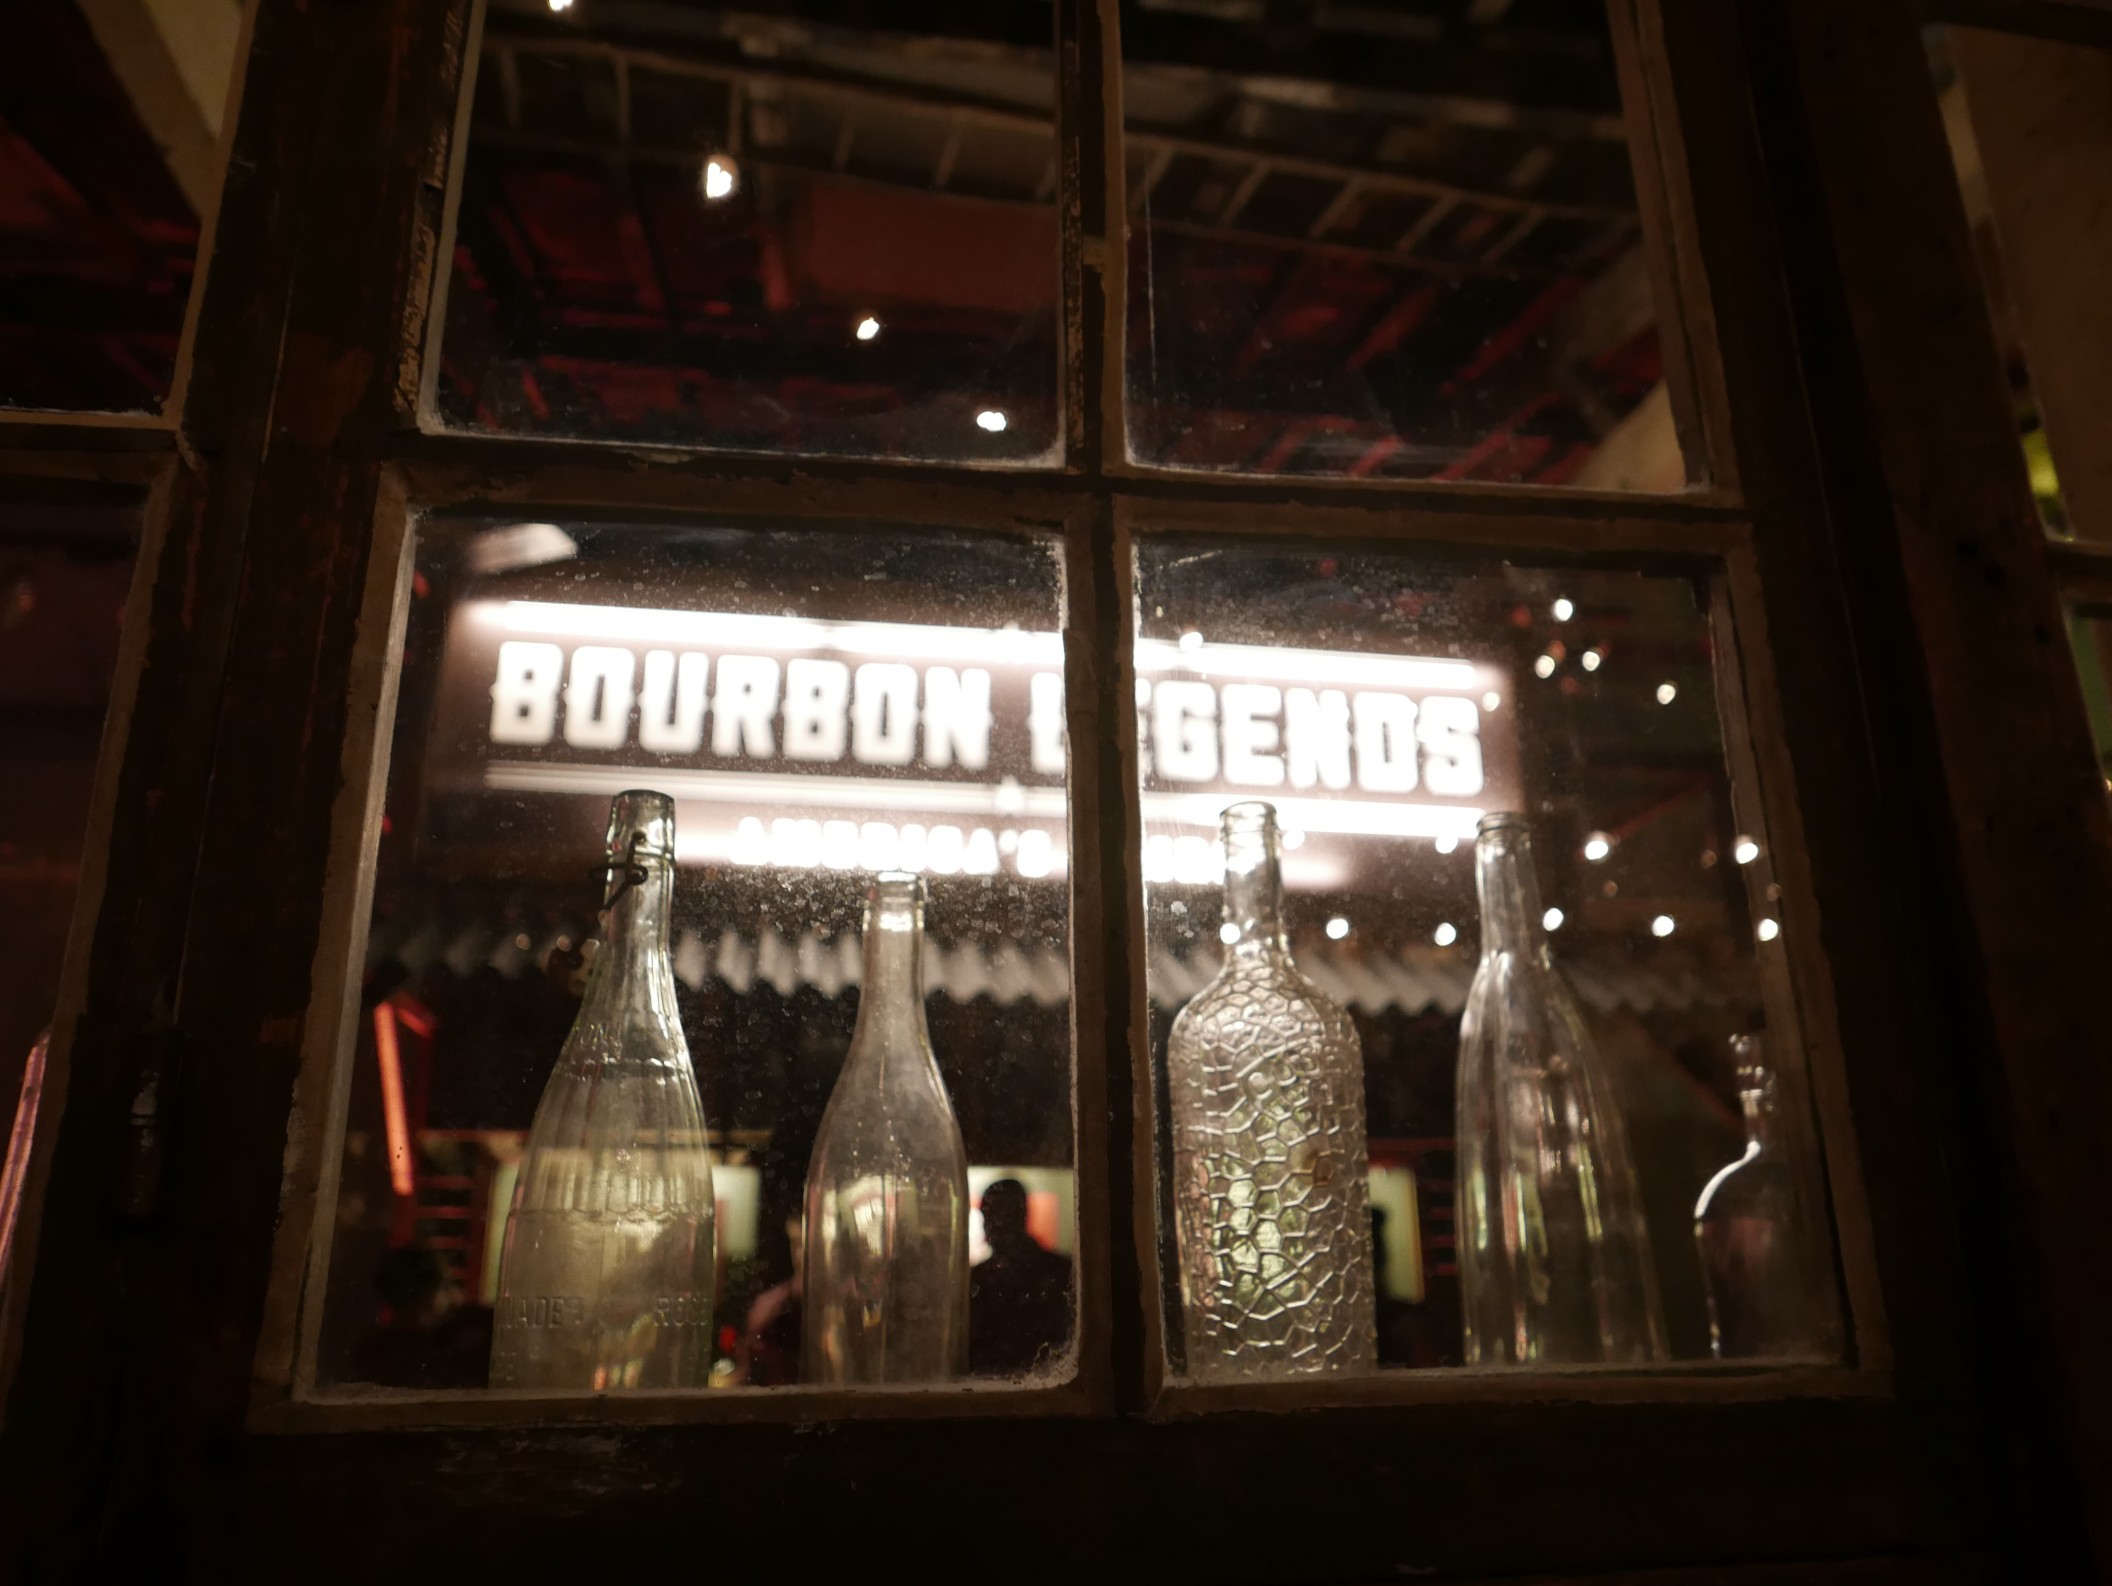 Bourbon legends bar